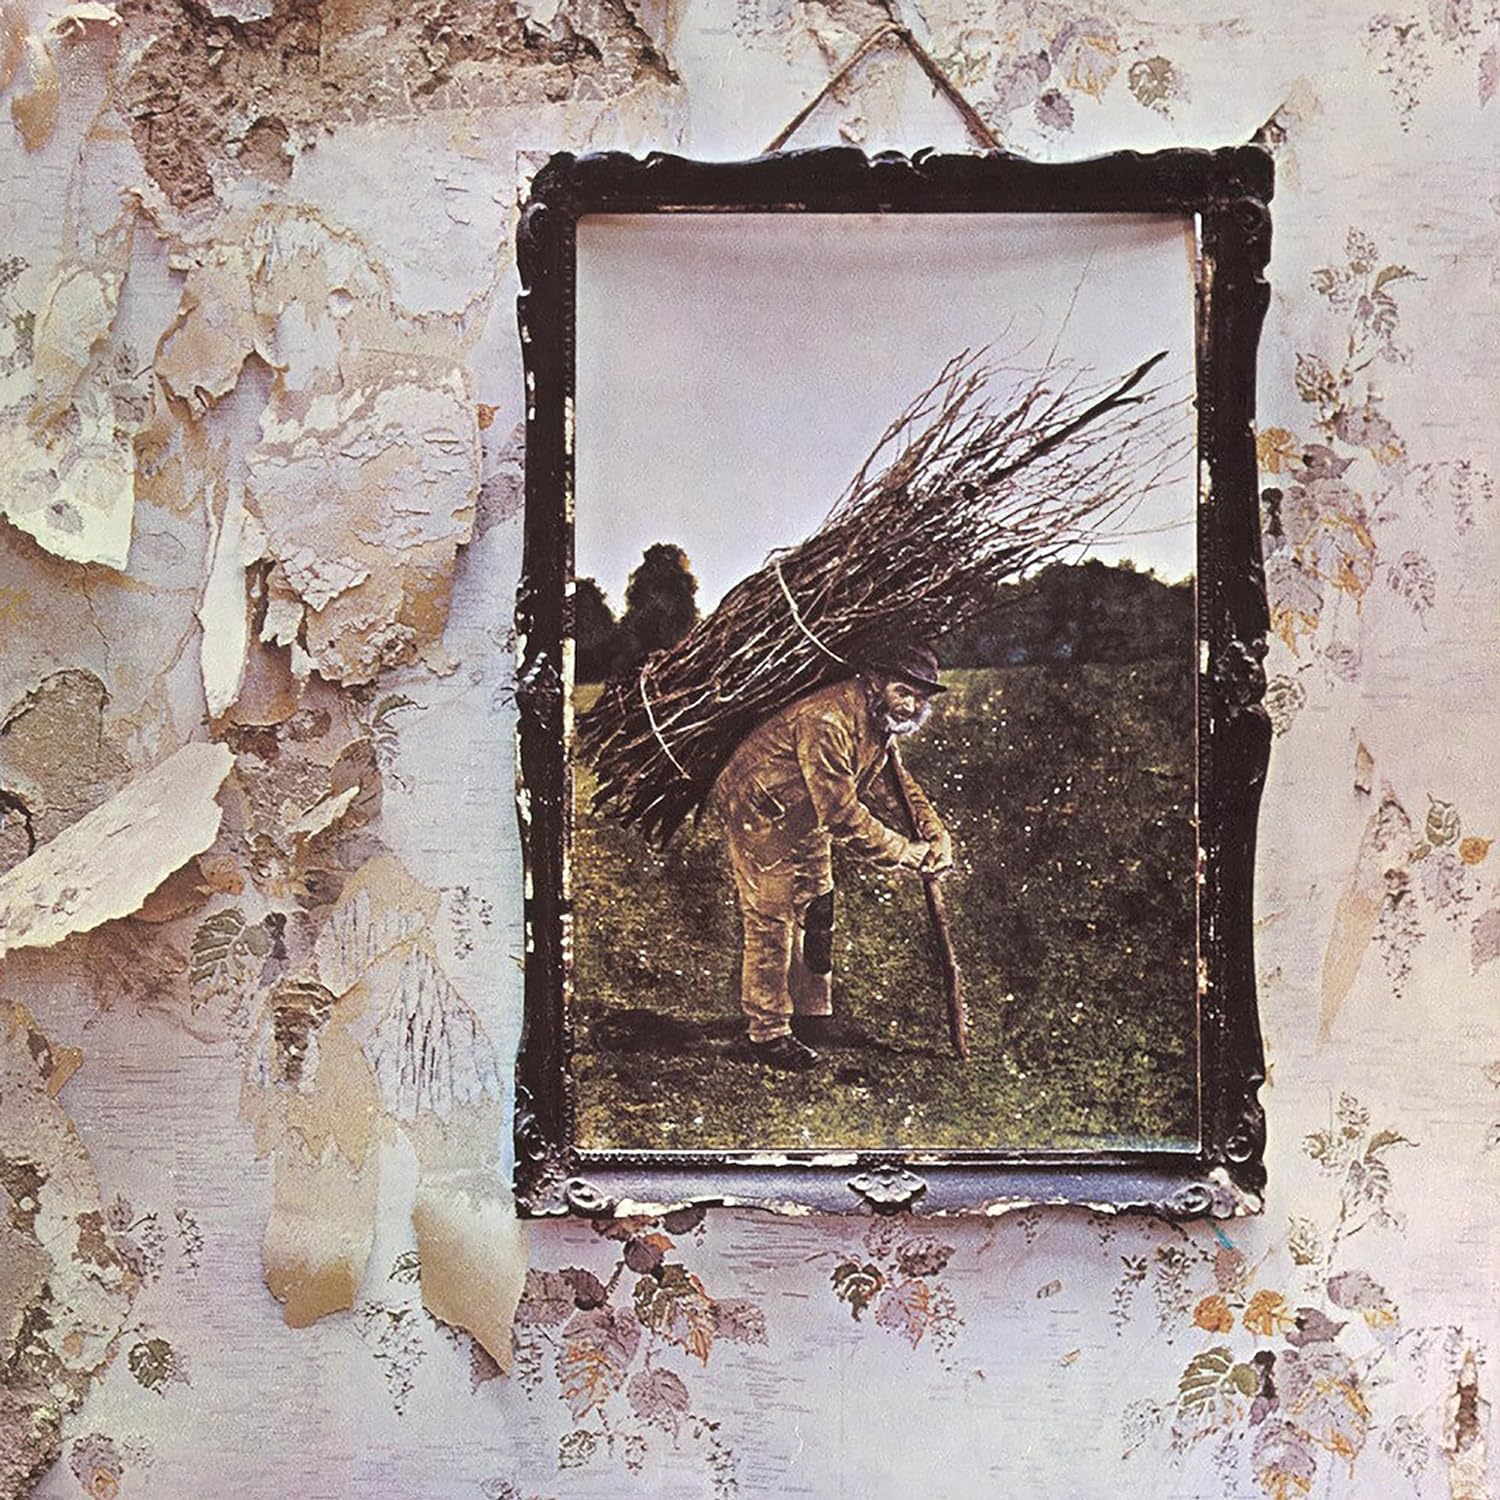 LED ZEPPELIN - Led Zeppelin IV (Atlantic 75 Reissue) - LP - Crystal Clear Diamond Vinyl